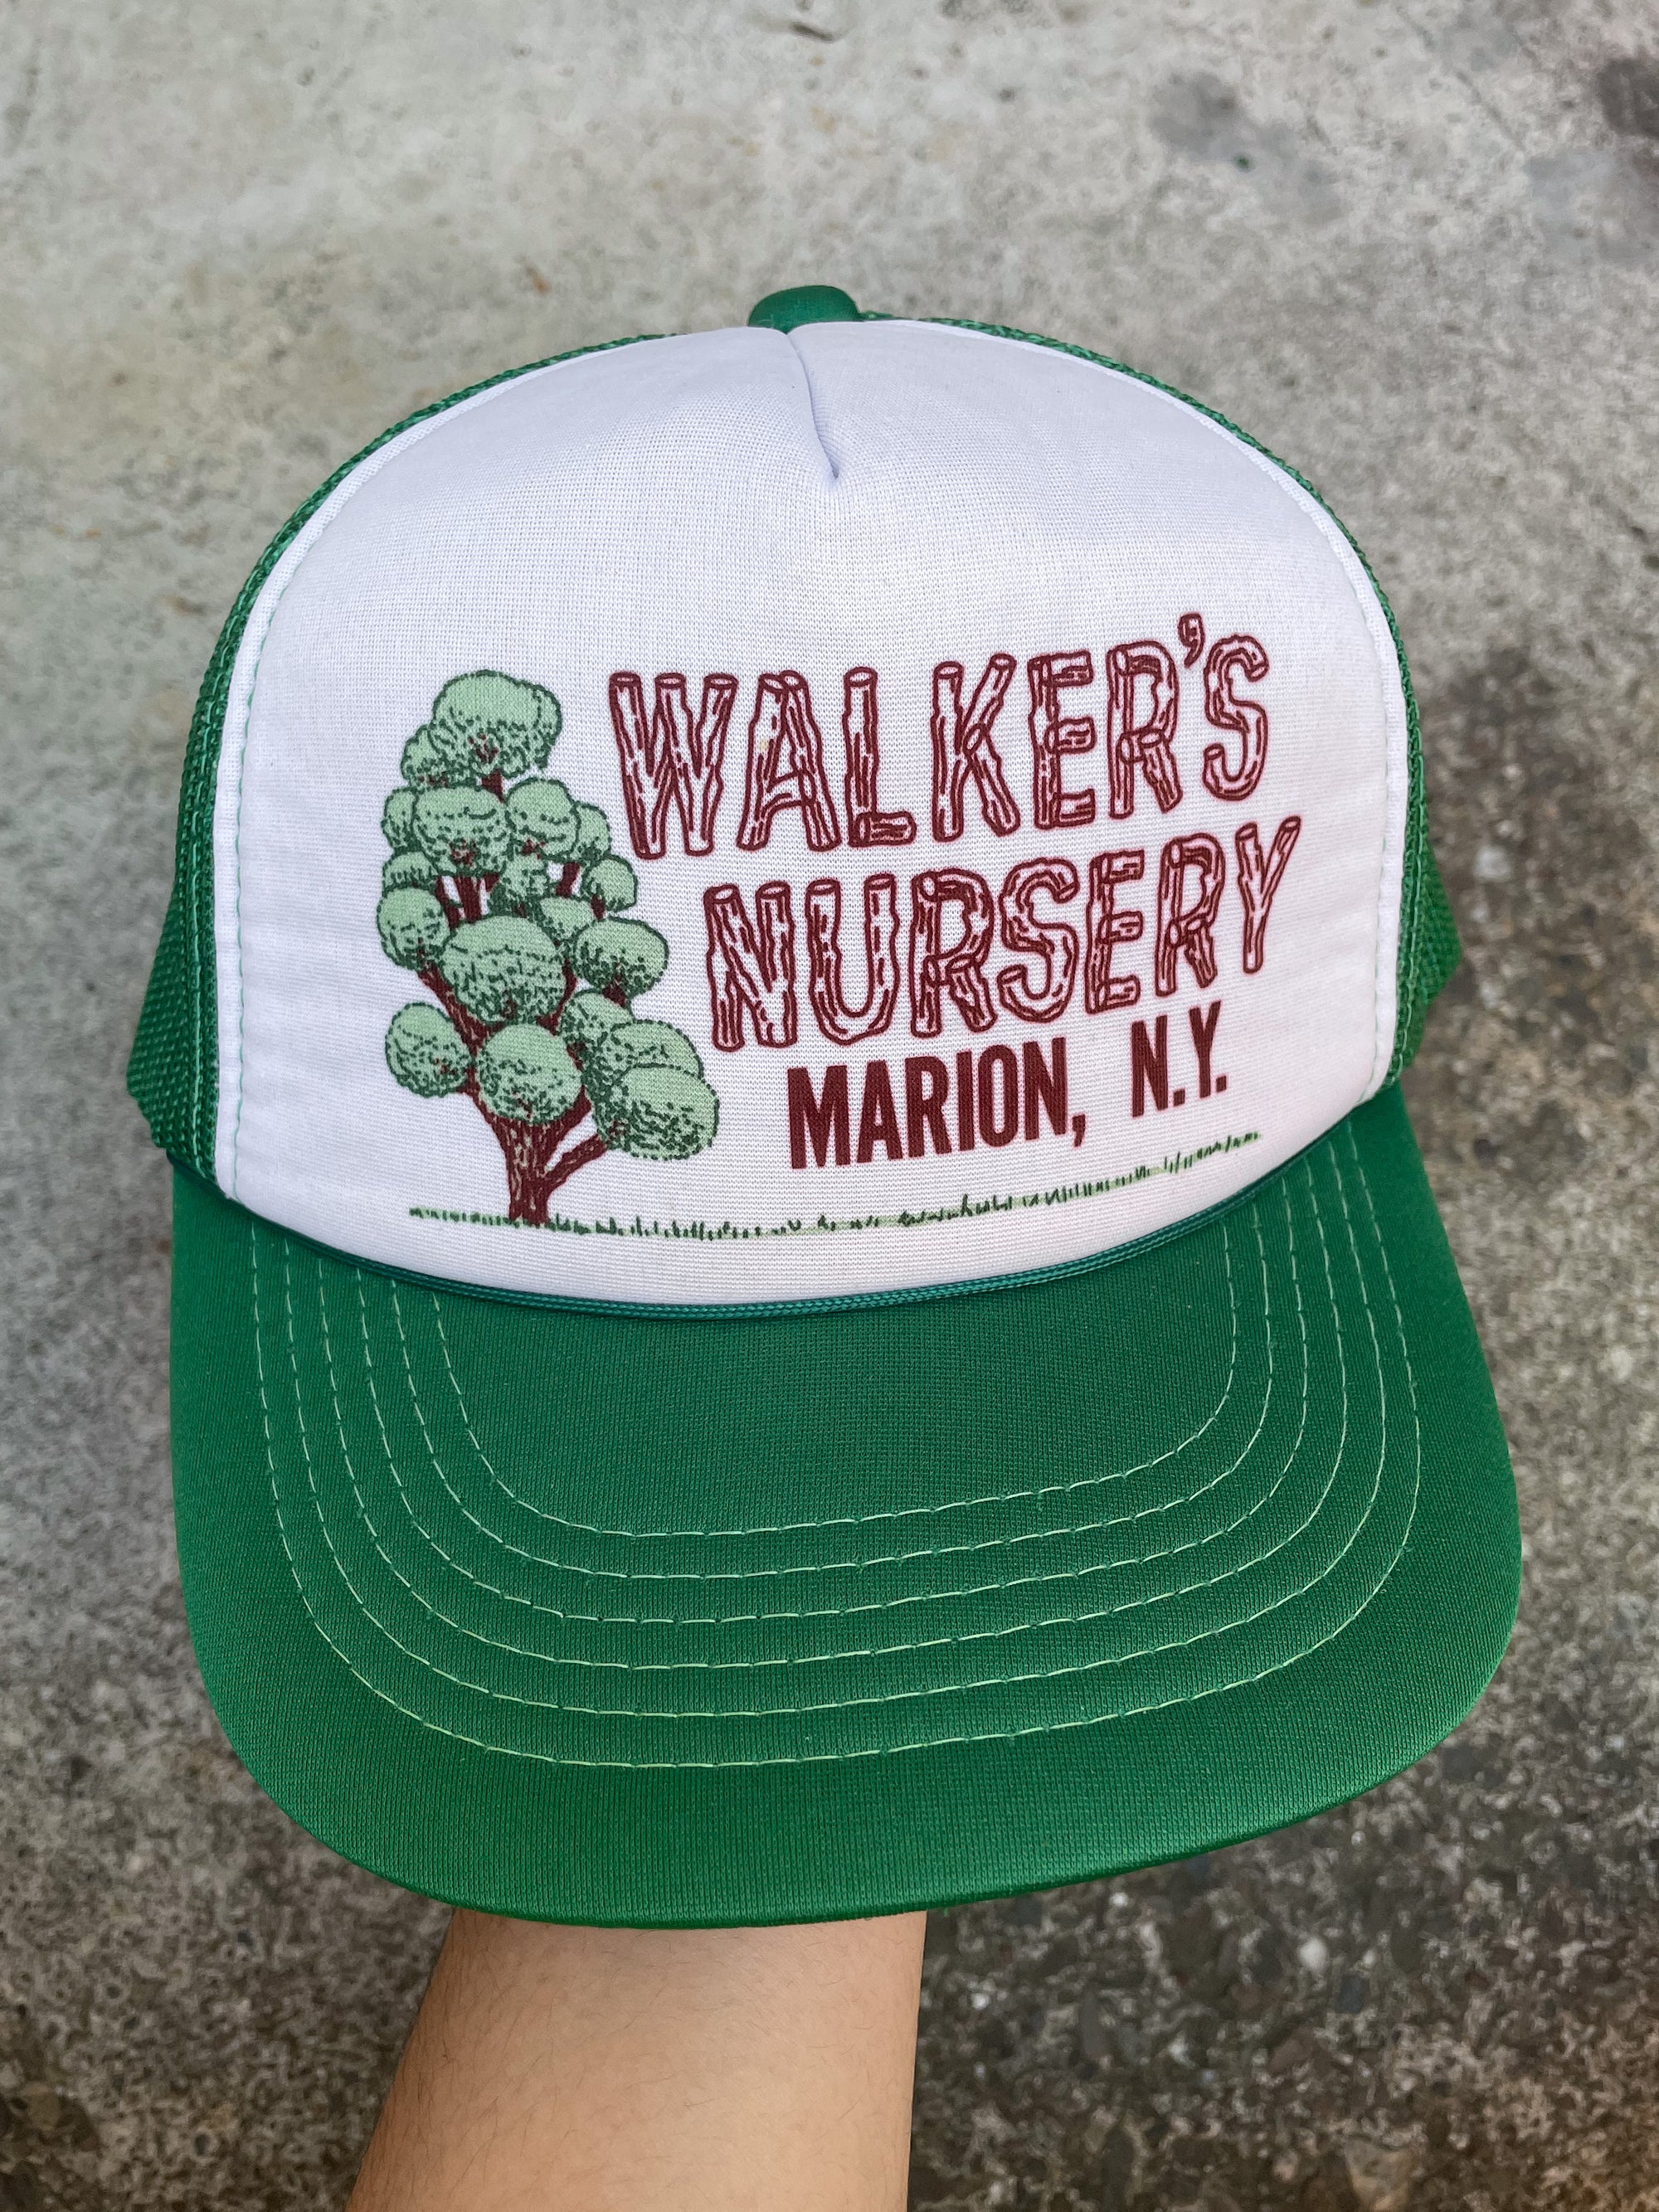 1990s “Walker’s Nursery” Trucker Hat